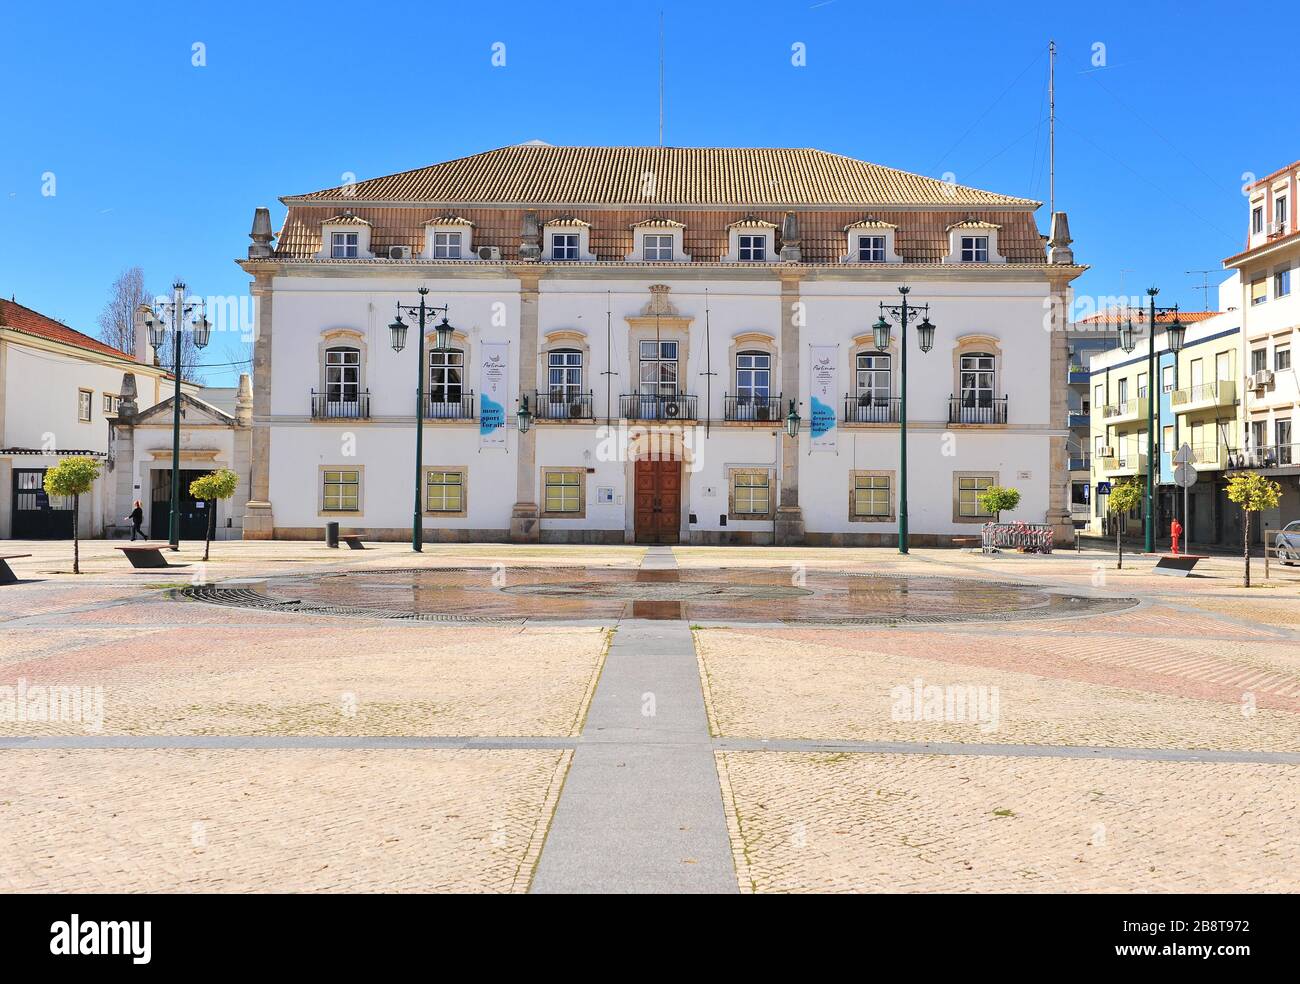 Portimao, Portugal - 2. März 2019: Schöner Platz mit Springbrunnen im Stadtzentrum von Portimao, Portugal. Stockfoto